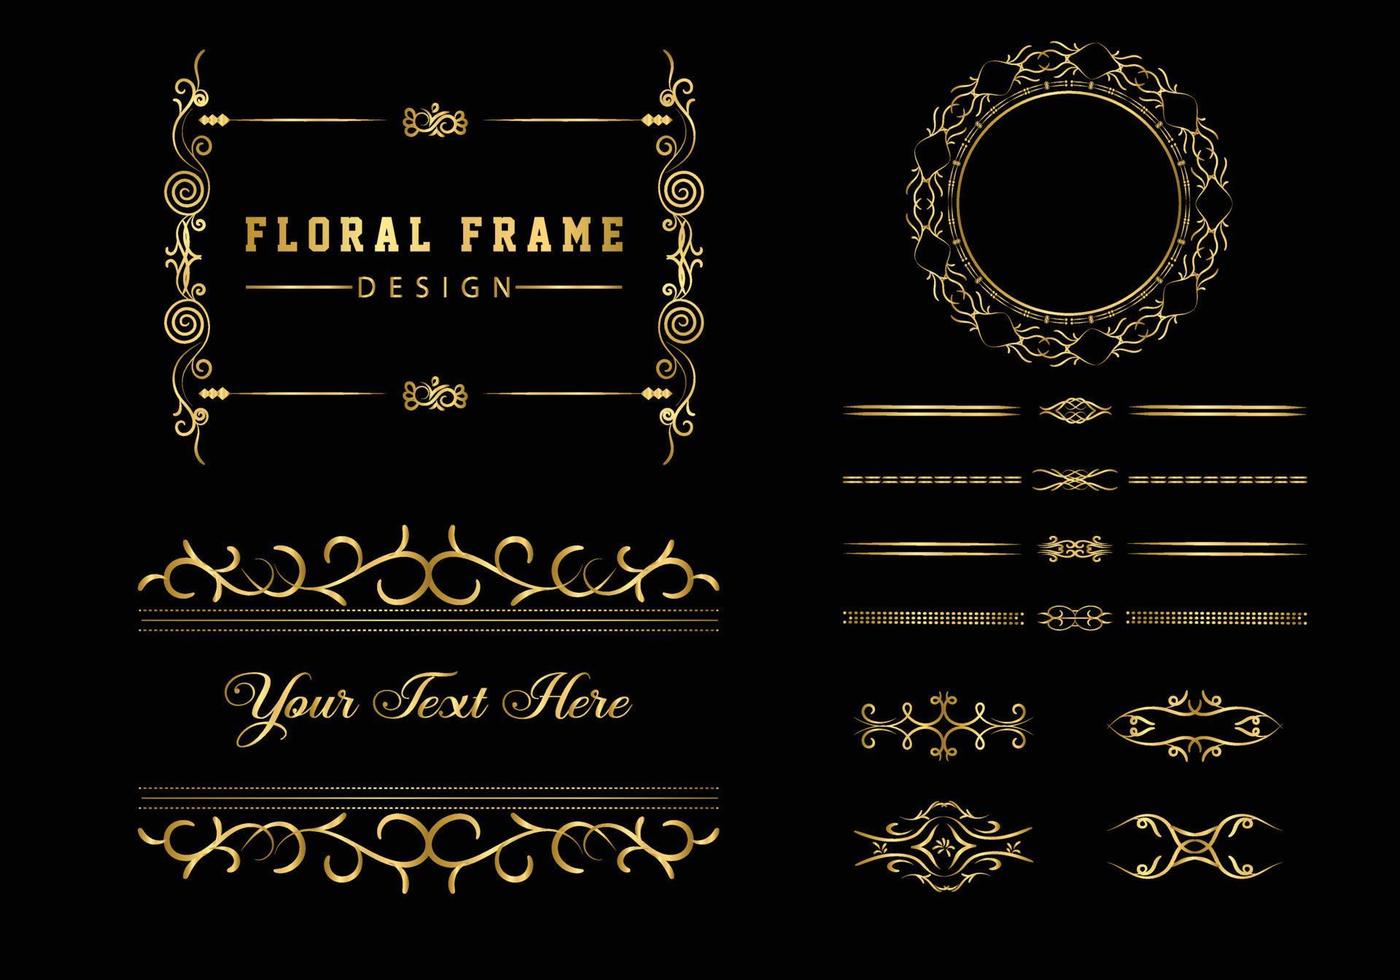 marco redondo decorativo dorado para el diseño con adorno floral. una plantilla para imprimir postales. vector